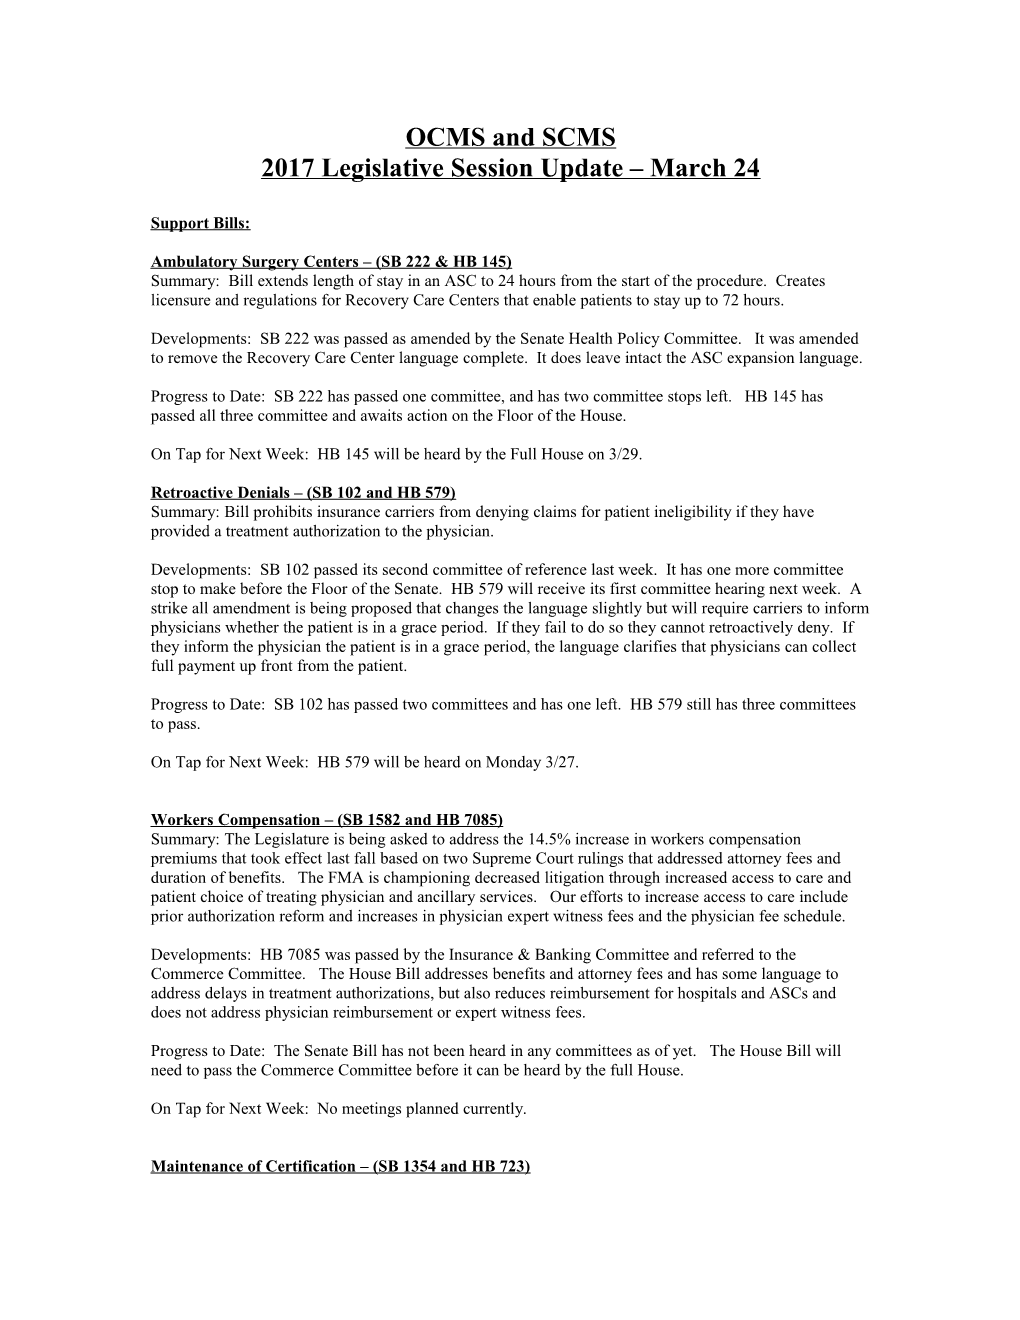 2017 Legislative Session Update March 24